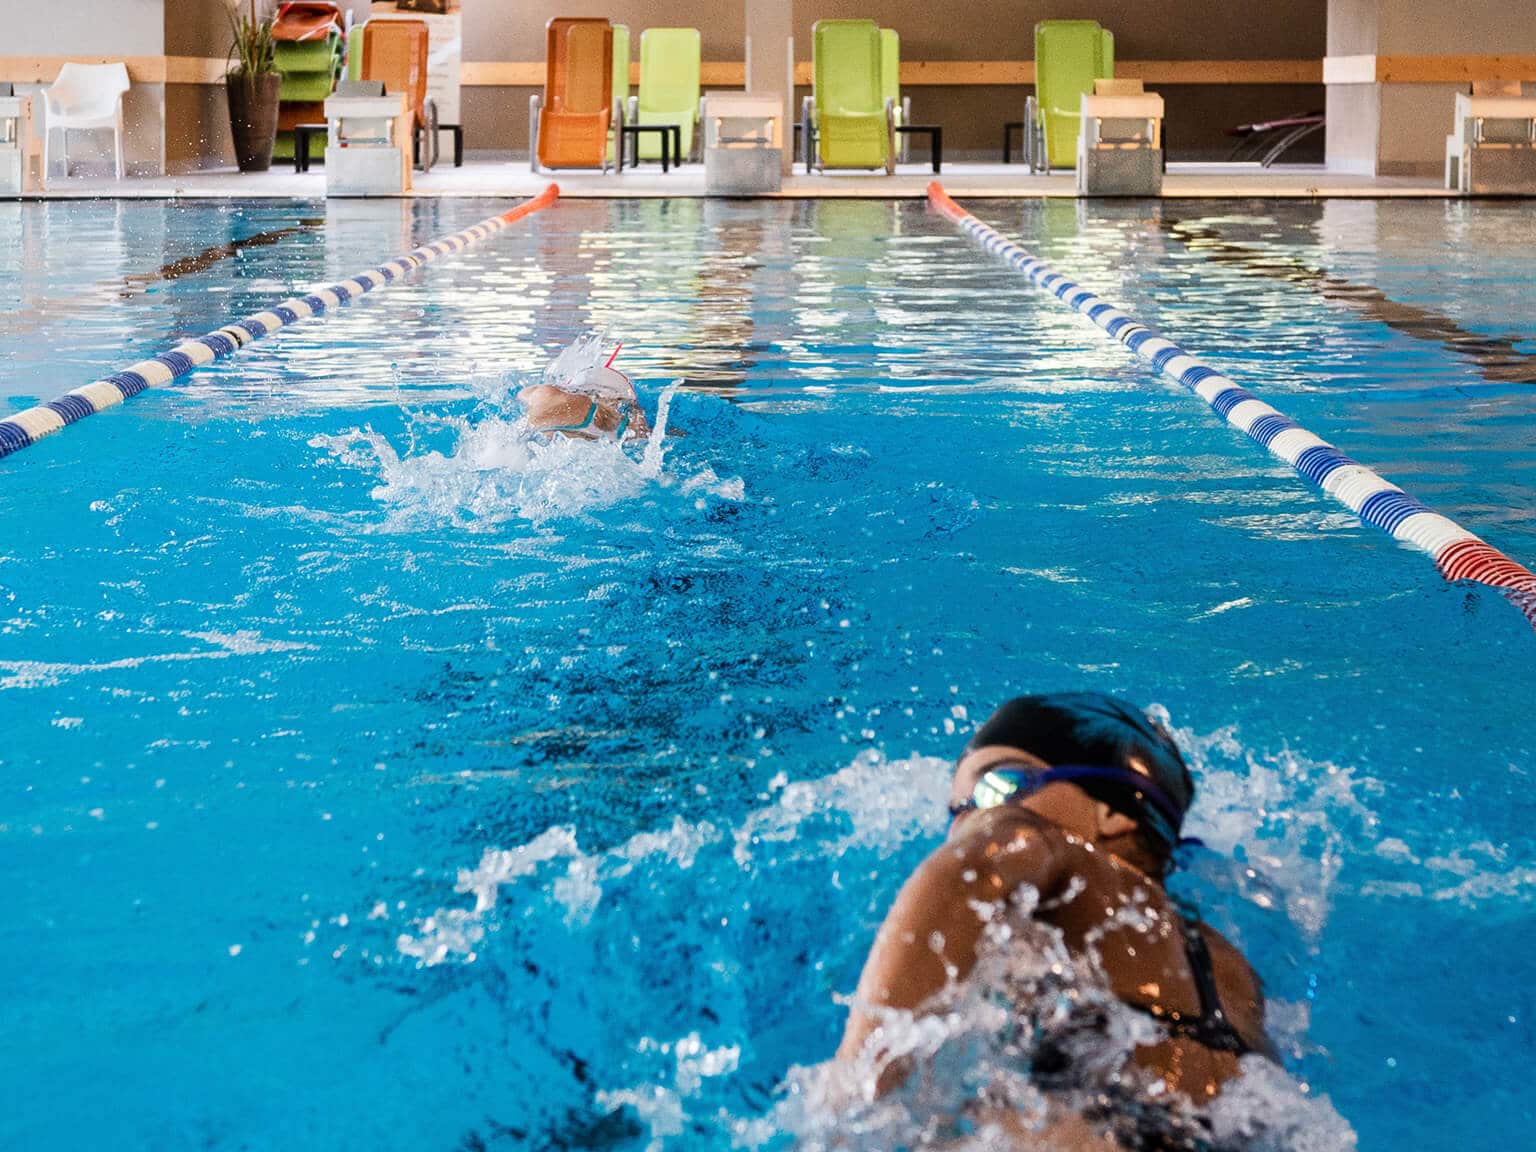 Zwei Schwimmerinnen ziehen ihre Bahnen im großen Innenbecken, am Kopfende stehen Liegestühle..